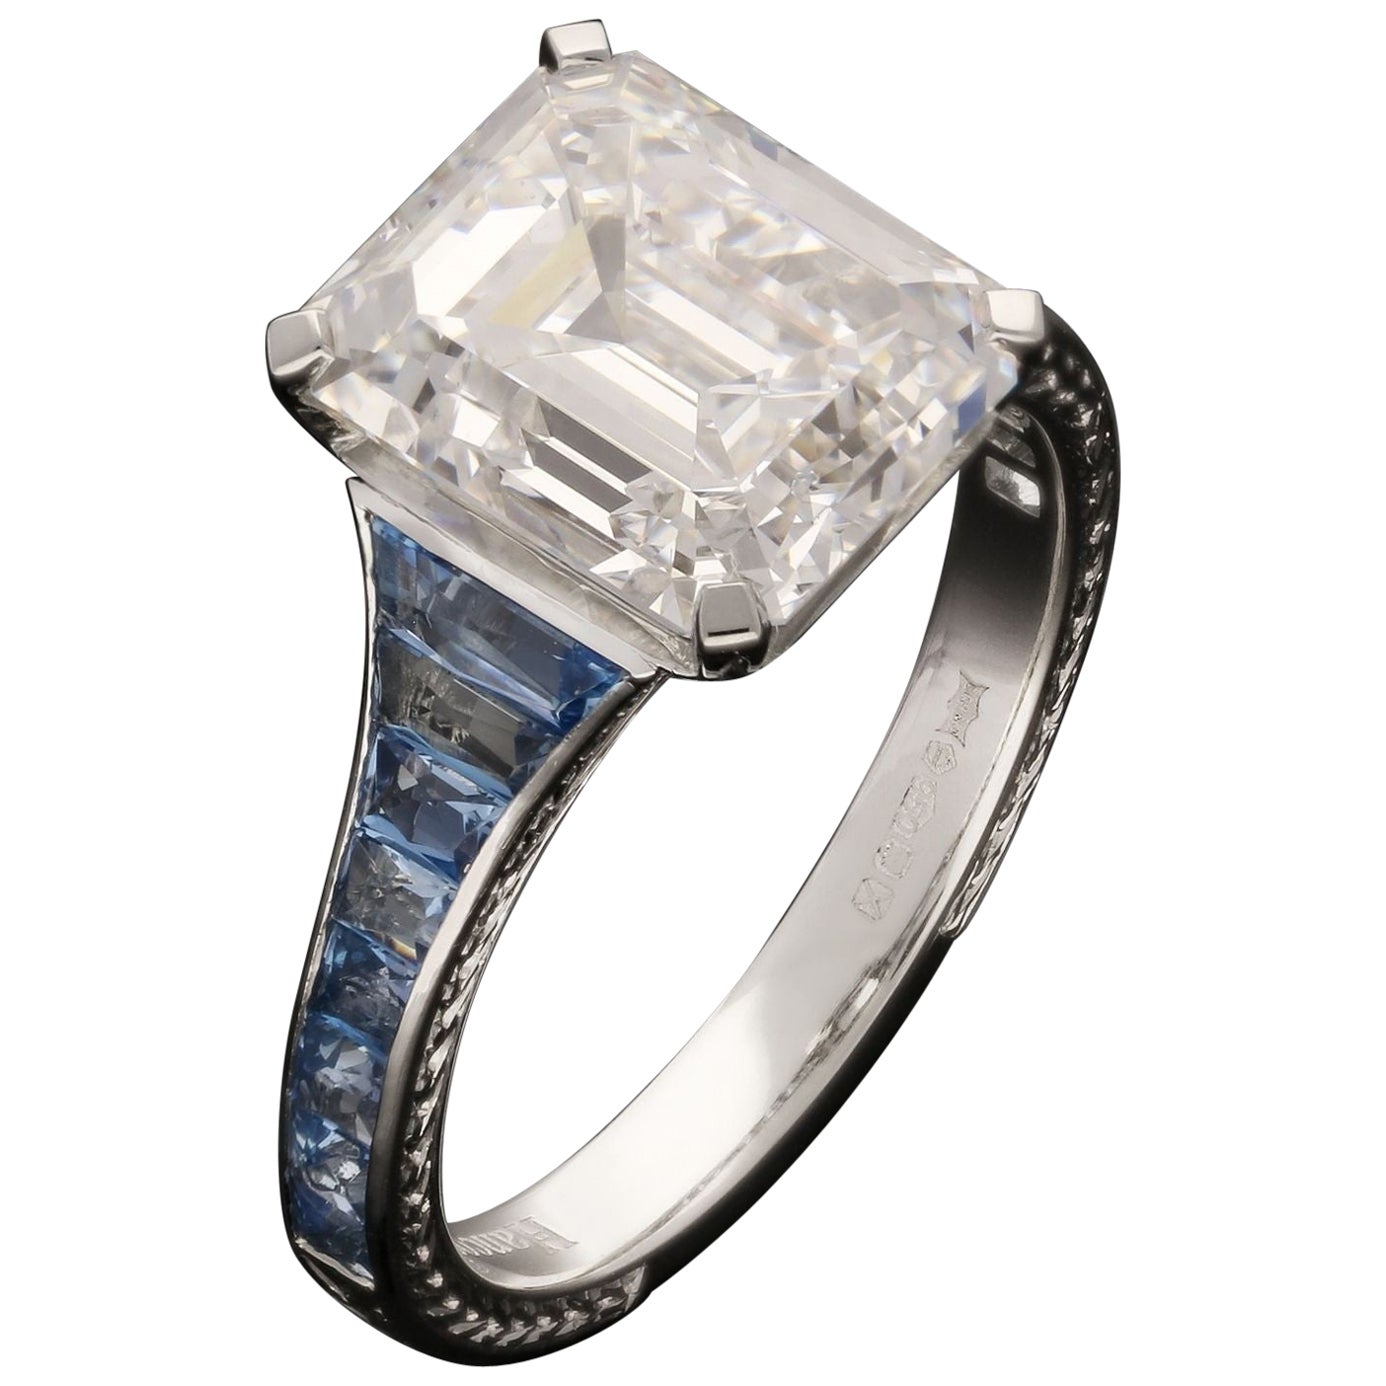 Hancocks 4.48ct Emerald Cut Diamond Ring with Aquamarine Shoulders in Platinum